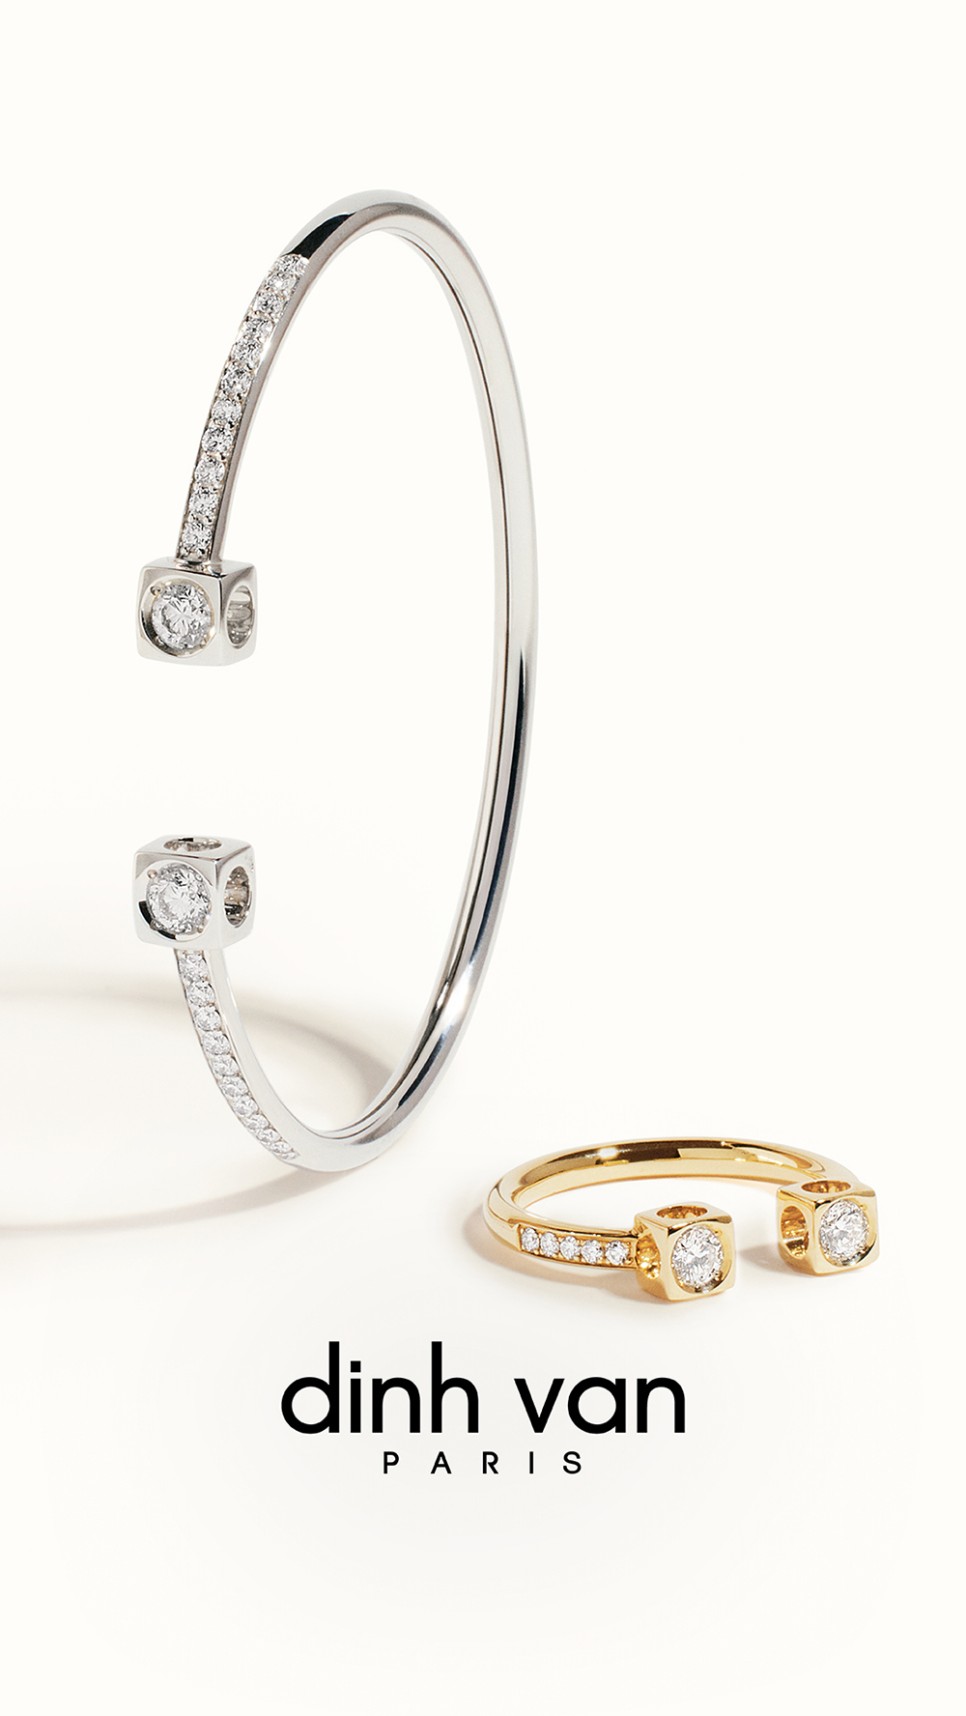 다이아몬드 웨딩링 브랜드 딘반 르 큐브 디아망 컬렉션 데일리로도 좋아!